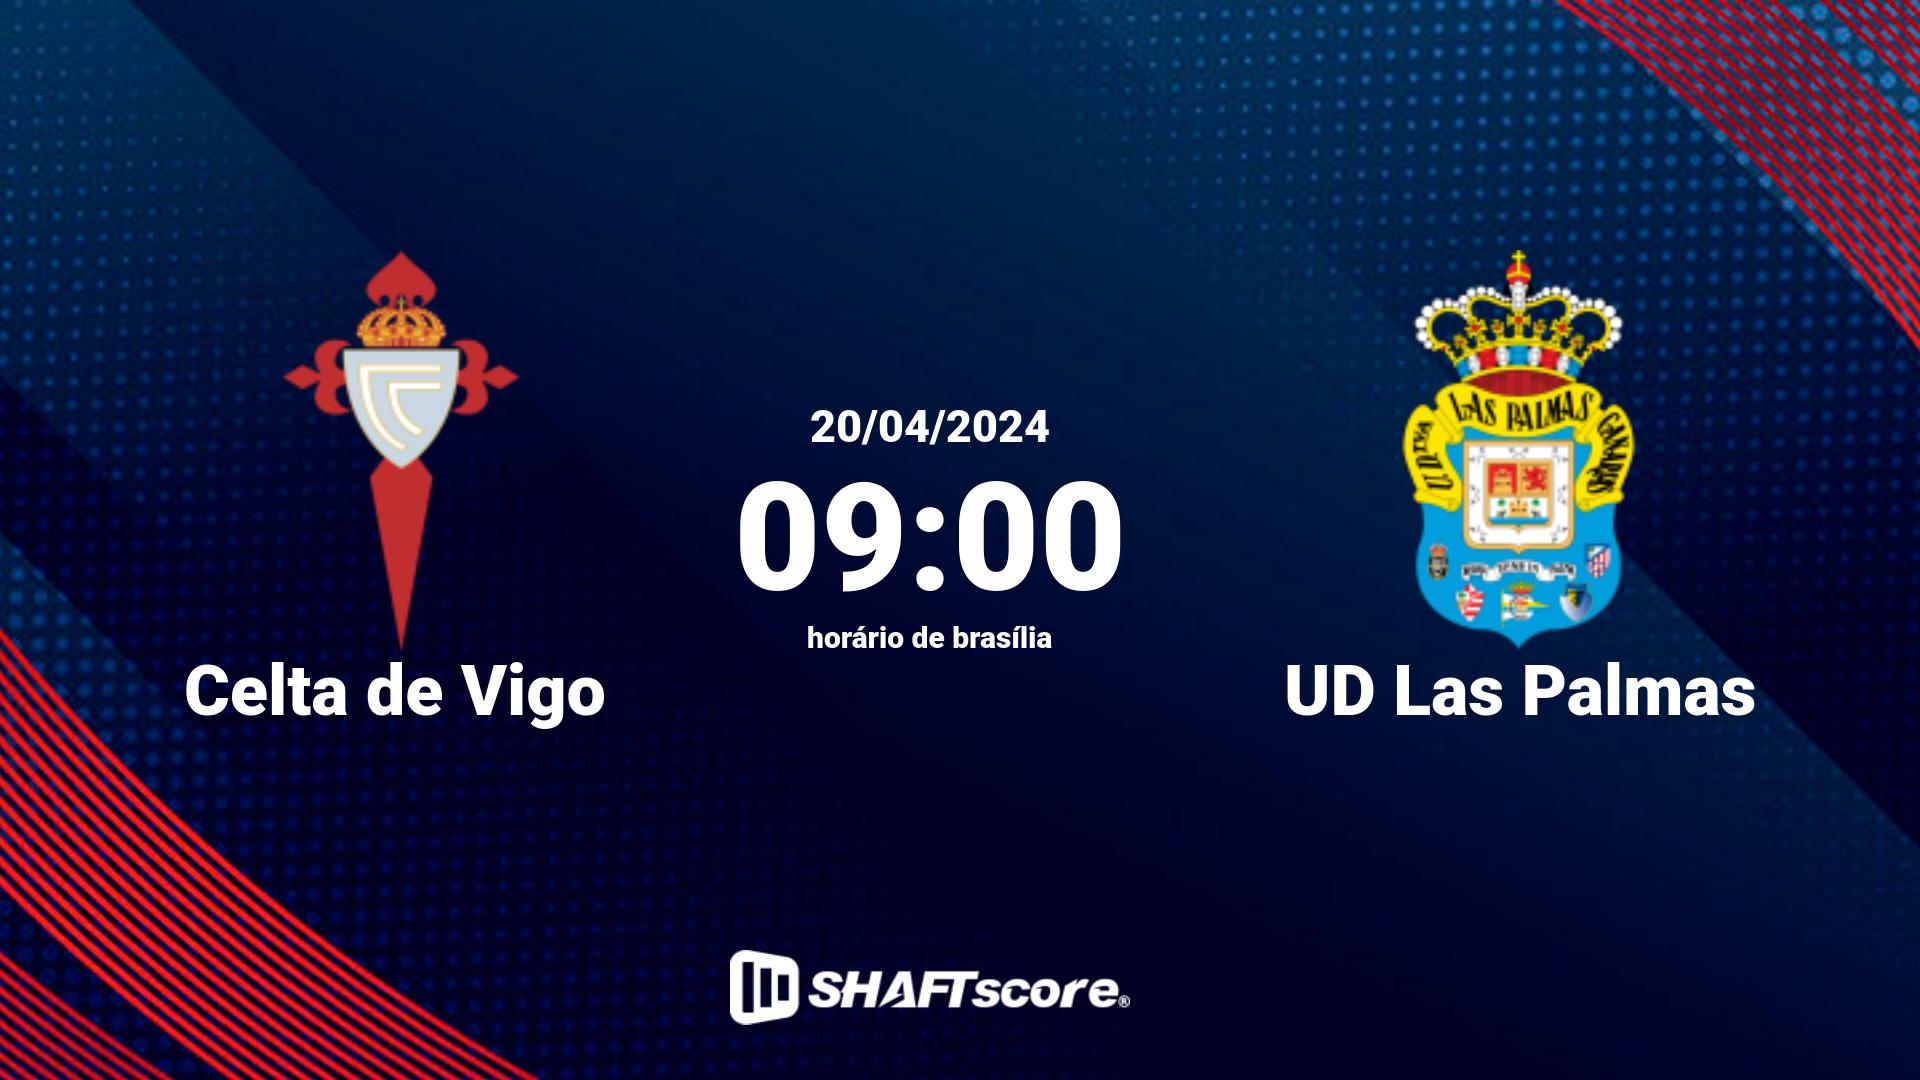 Estatísticas do jogo Celta de Vigo vs UD Las Palmas 20.04 09:00